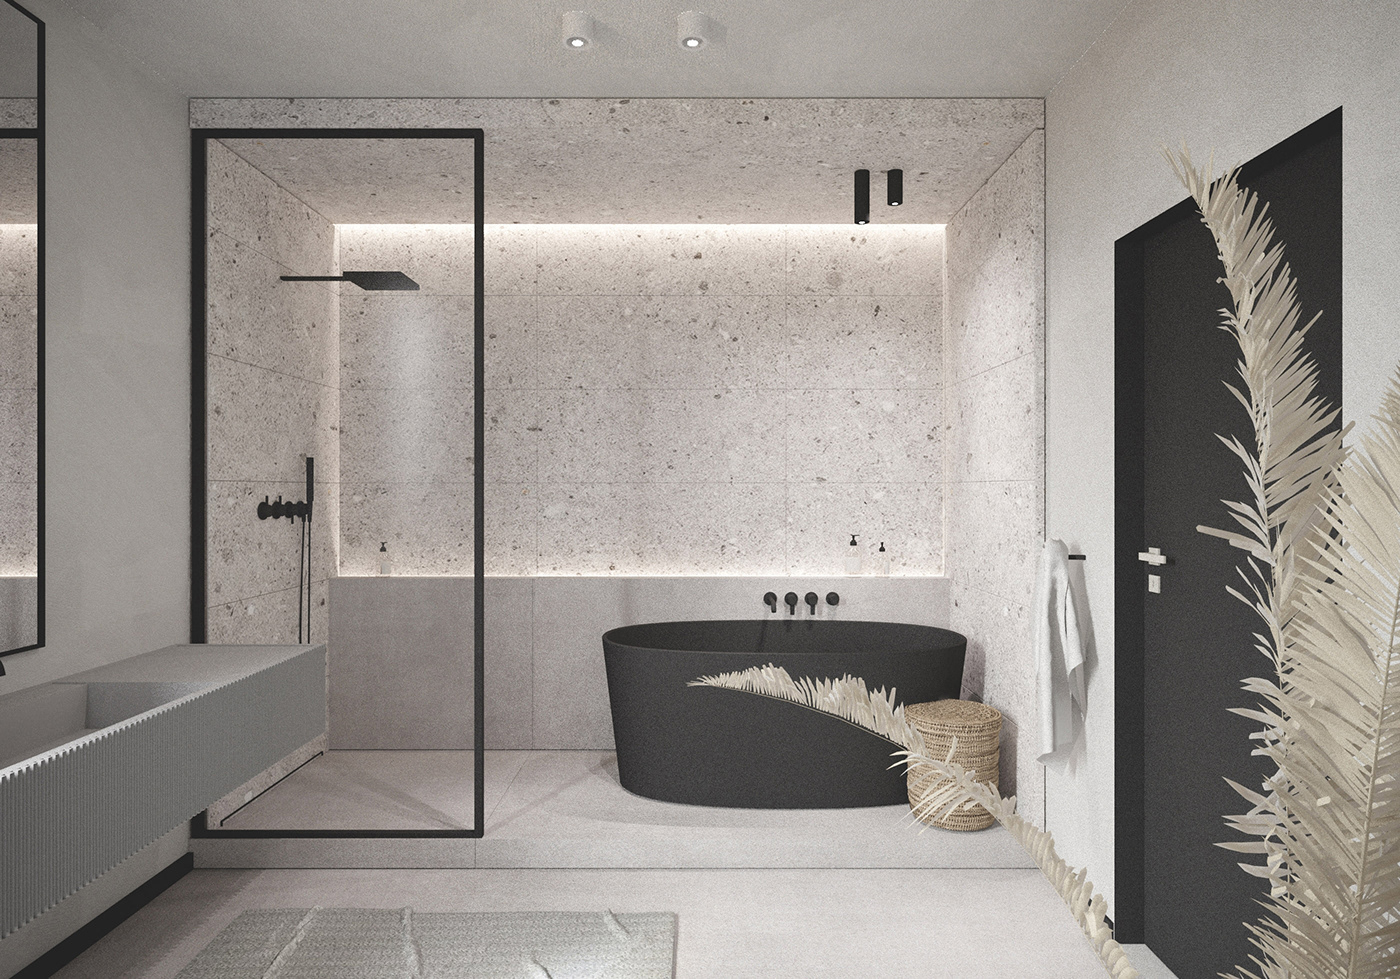 bathroom design Minimalism vola Interior architecture highend luxury